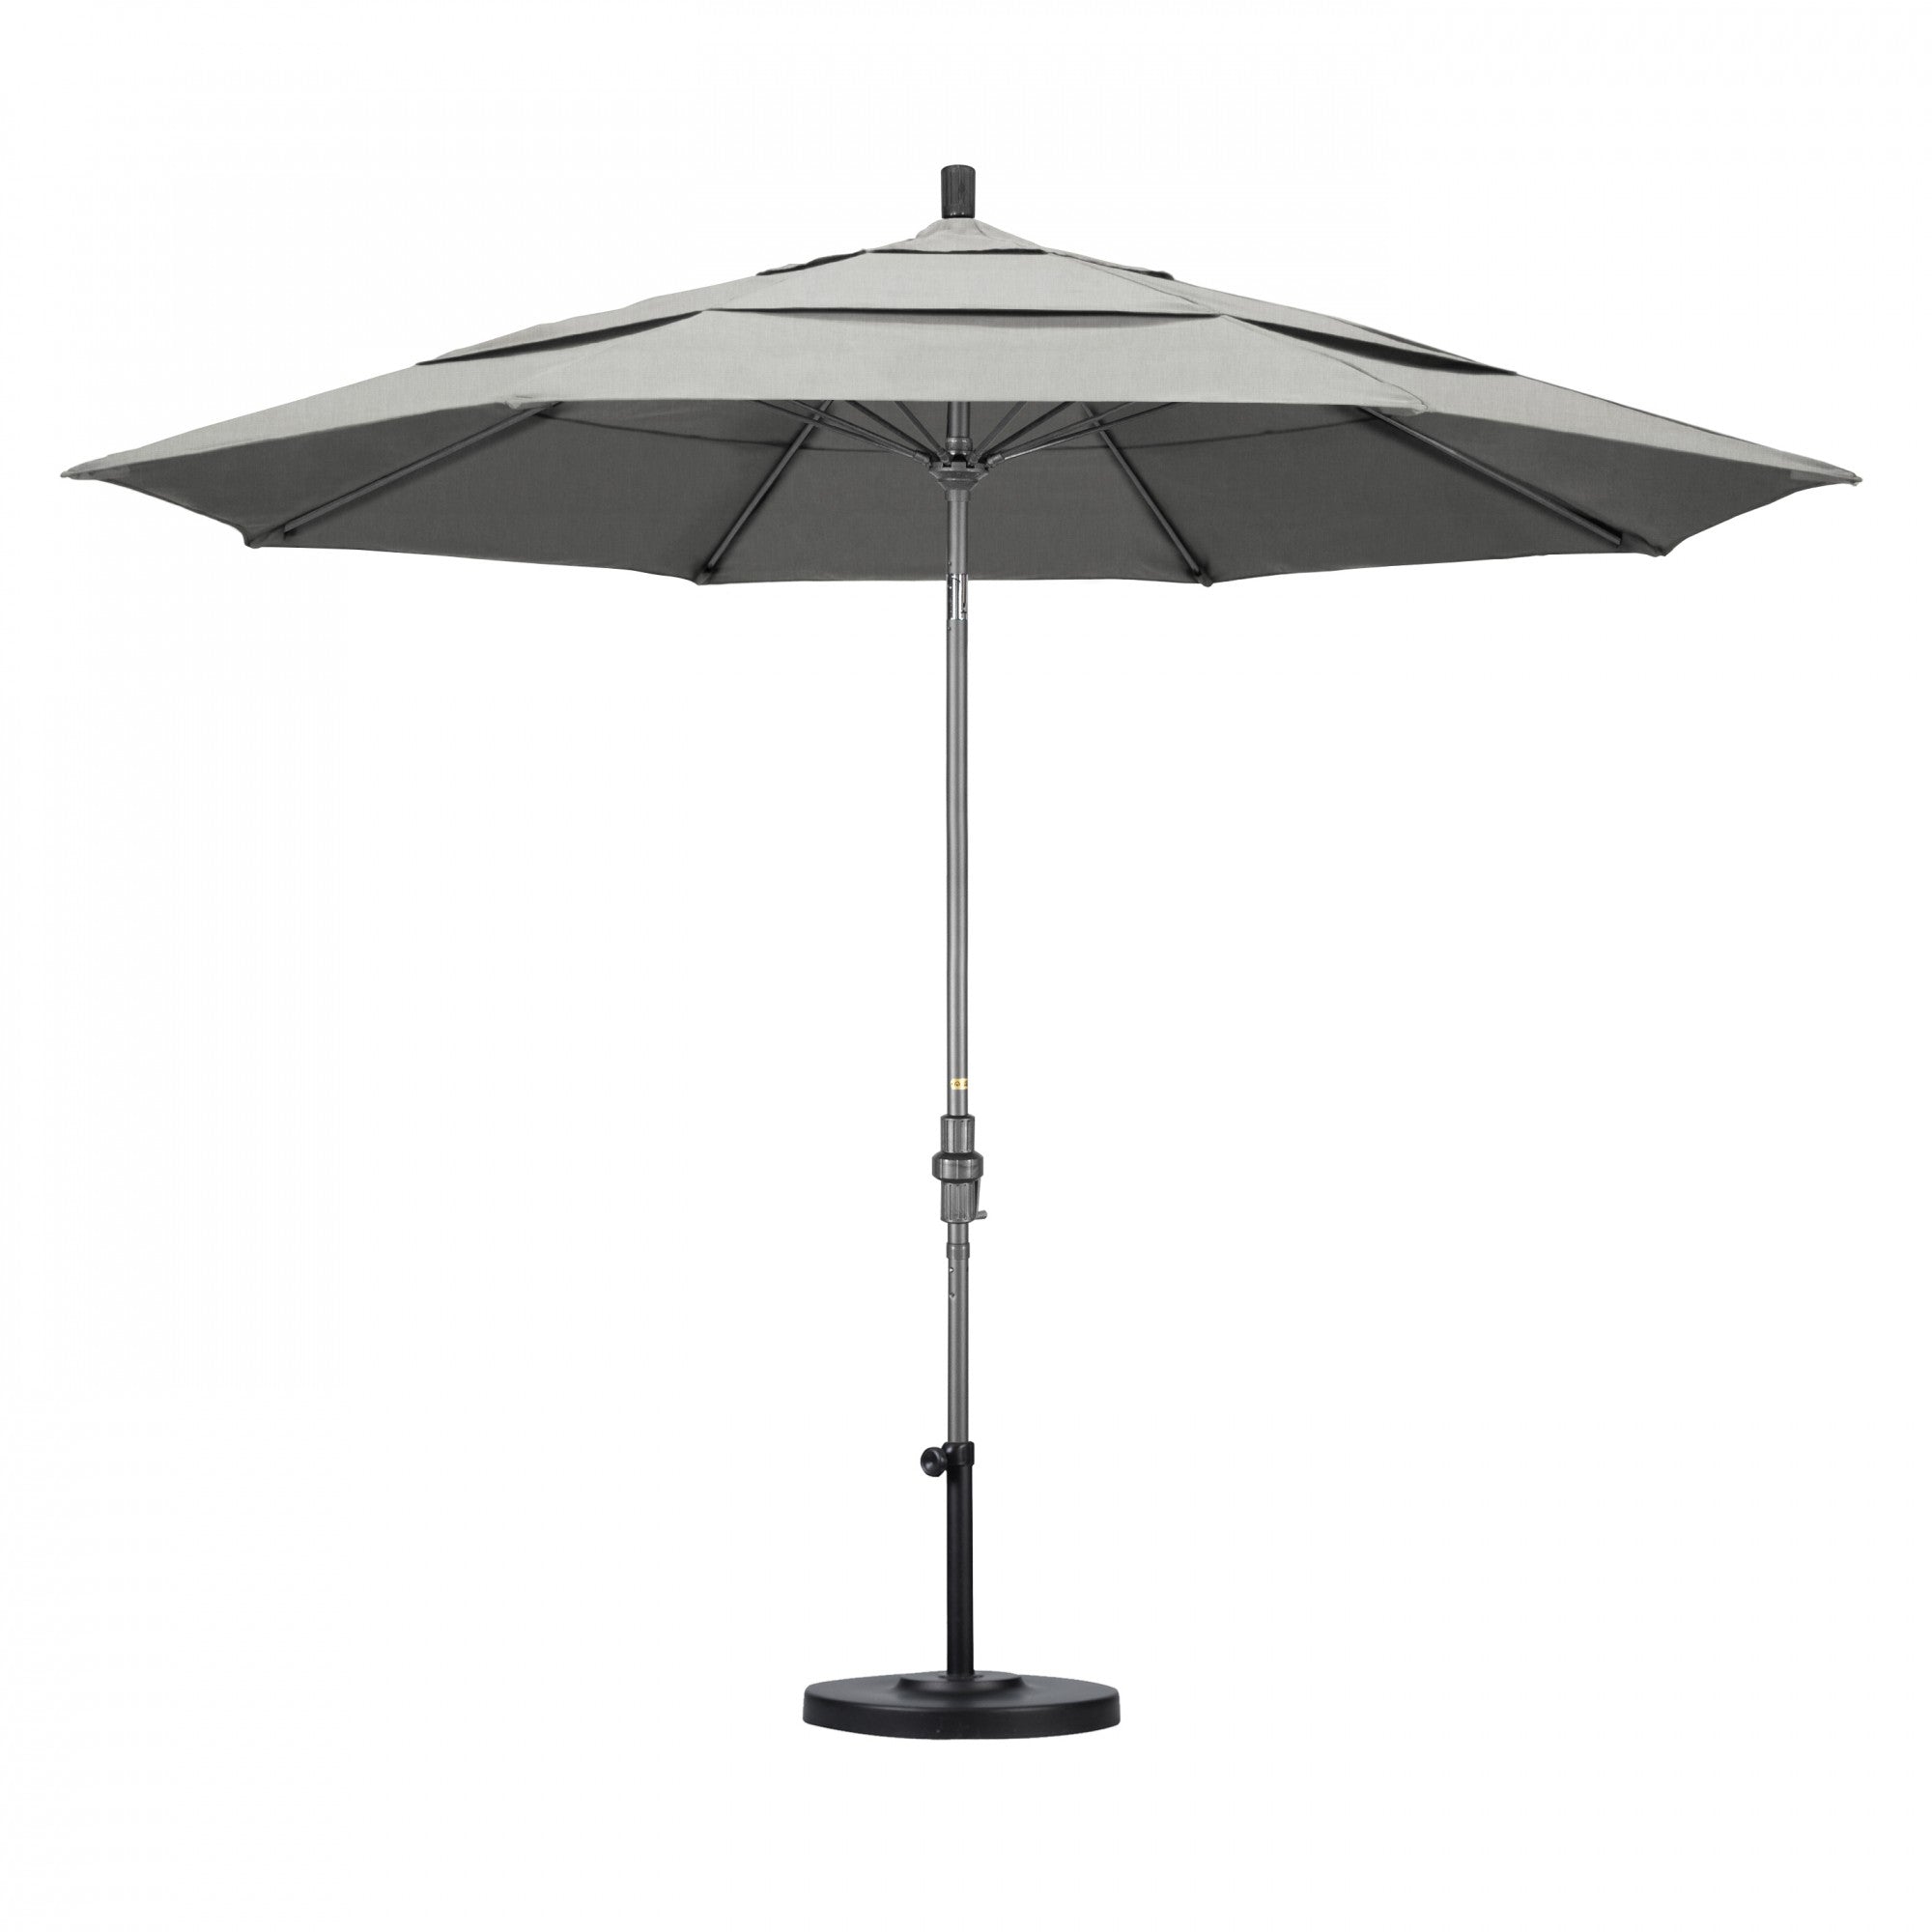 California Umbrella - 11' - Patio Umbrella Umbrella - Aluminum Pole - Granite - Sunbrella  - GSCUF118010-5402-DWV